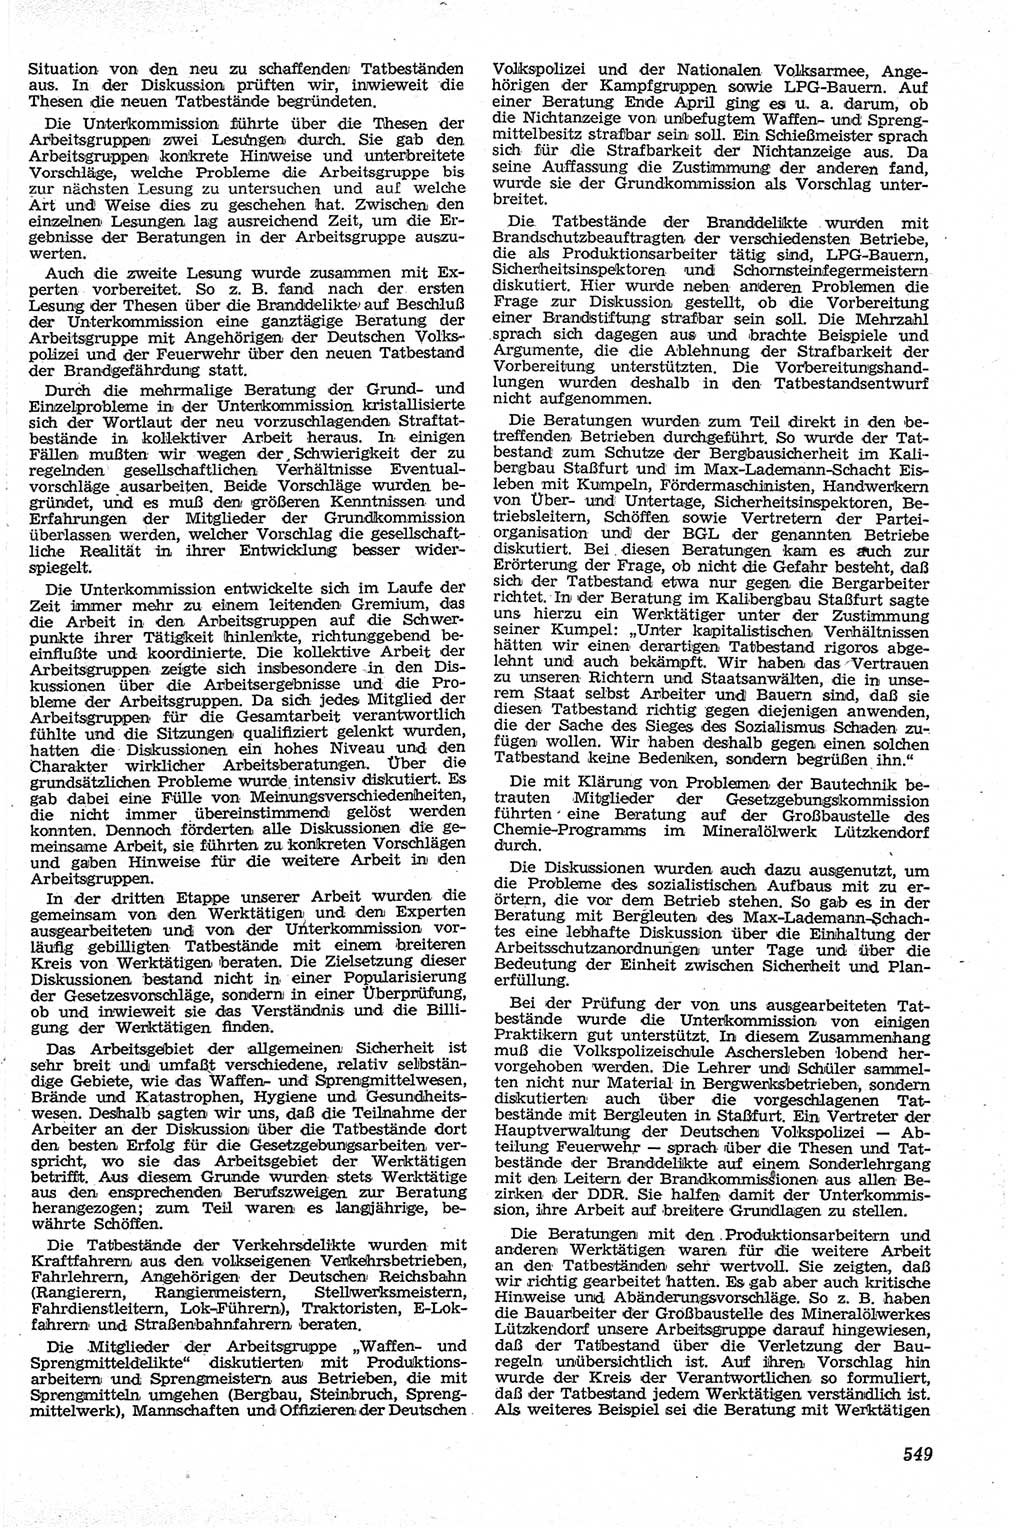 Neue Justiz (NJ), Zeitschrift für Recht und Rechtswissenschaft [Deutsche Demokratische Republik (DDR)], 13. Jahrgang 1959, Seite 549 (NJ DDR 1959, S. 549)